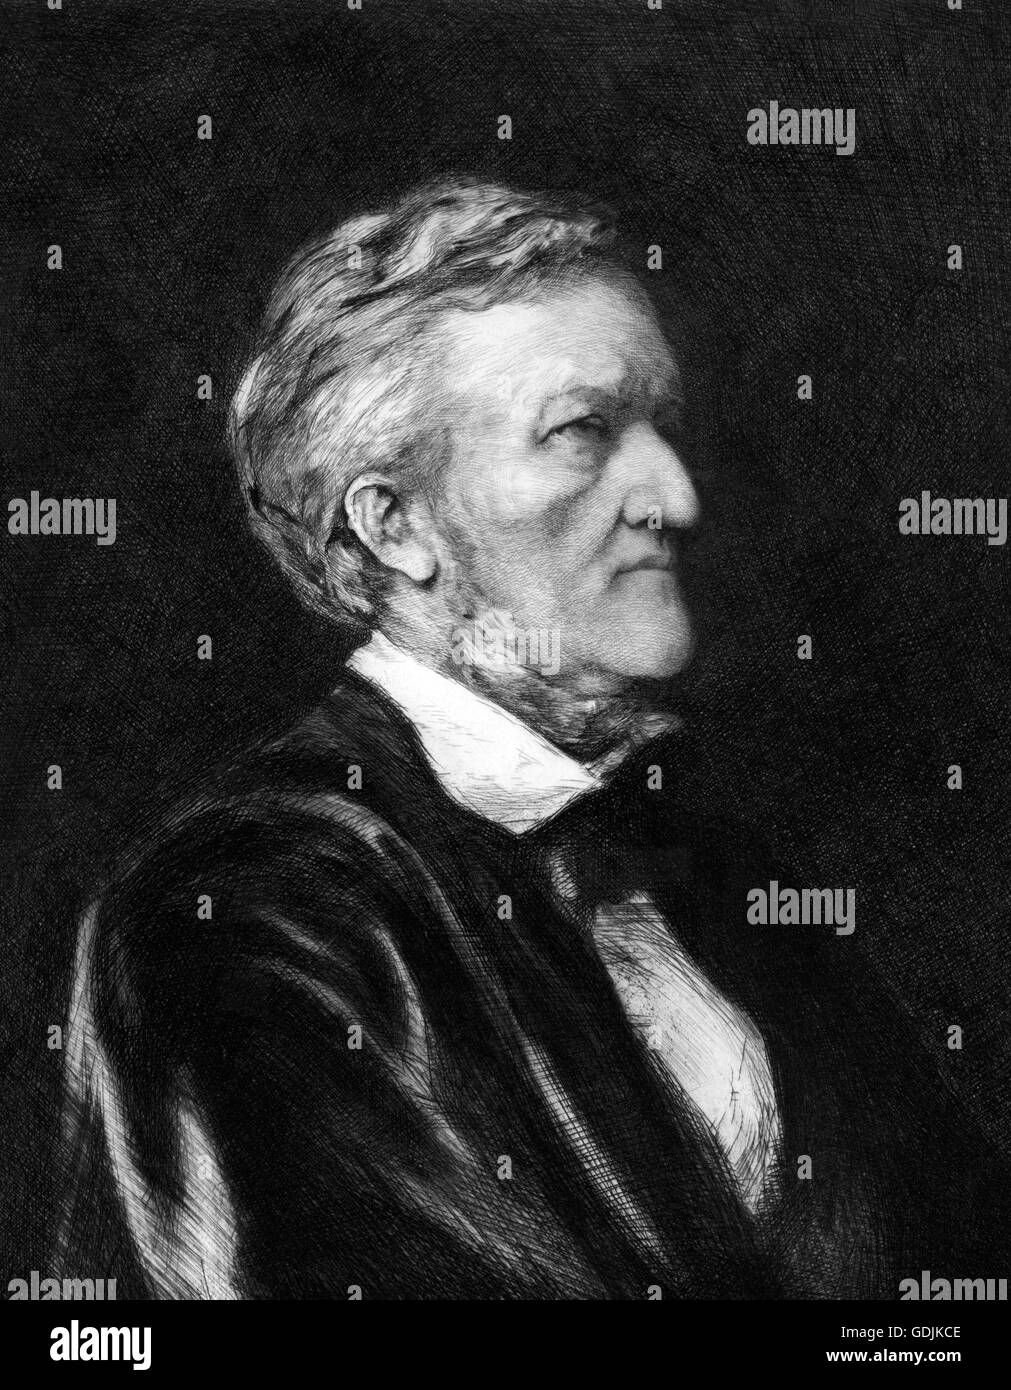 Richard Wagner. Porträt des deutschen Komponisten, Wilhelm Richard Wagner (1813-1883). Radierung von Hubert Herkomer, 1878. Stockfoto